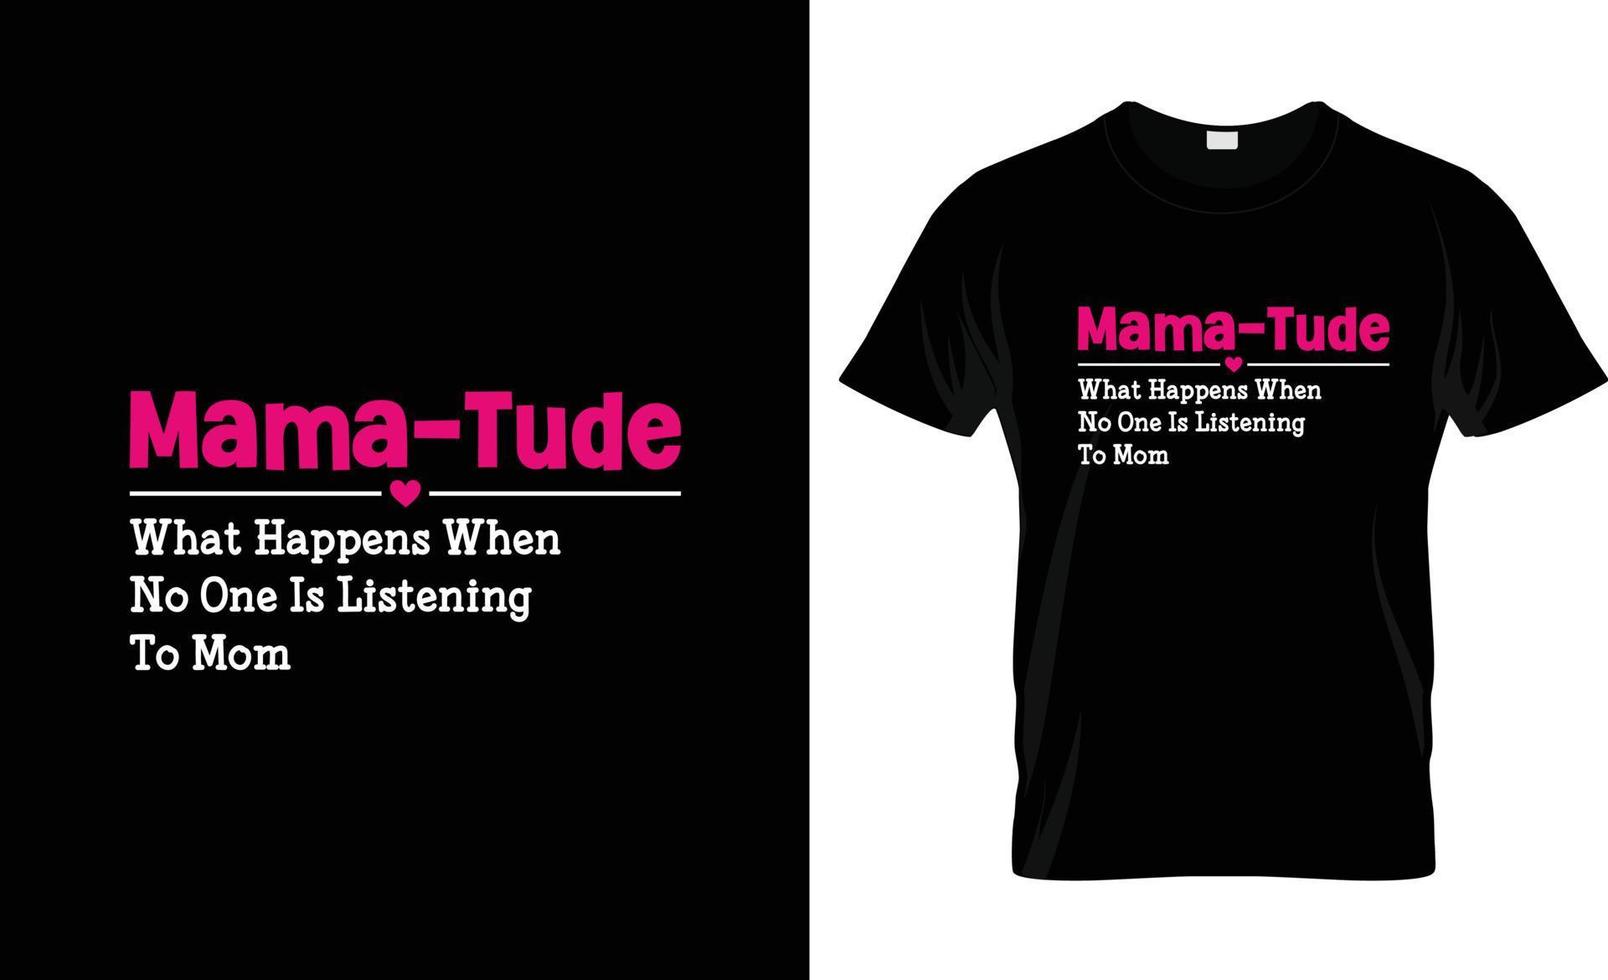 design de camiseta do dia das mães, slogan de camiseta do dia das mães e design de vestuário, tipografia do dia das mães, vetor do dia das mães, ilustração do dia das mães